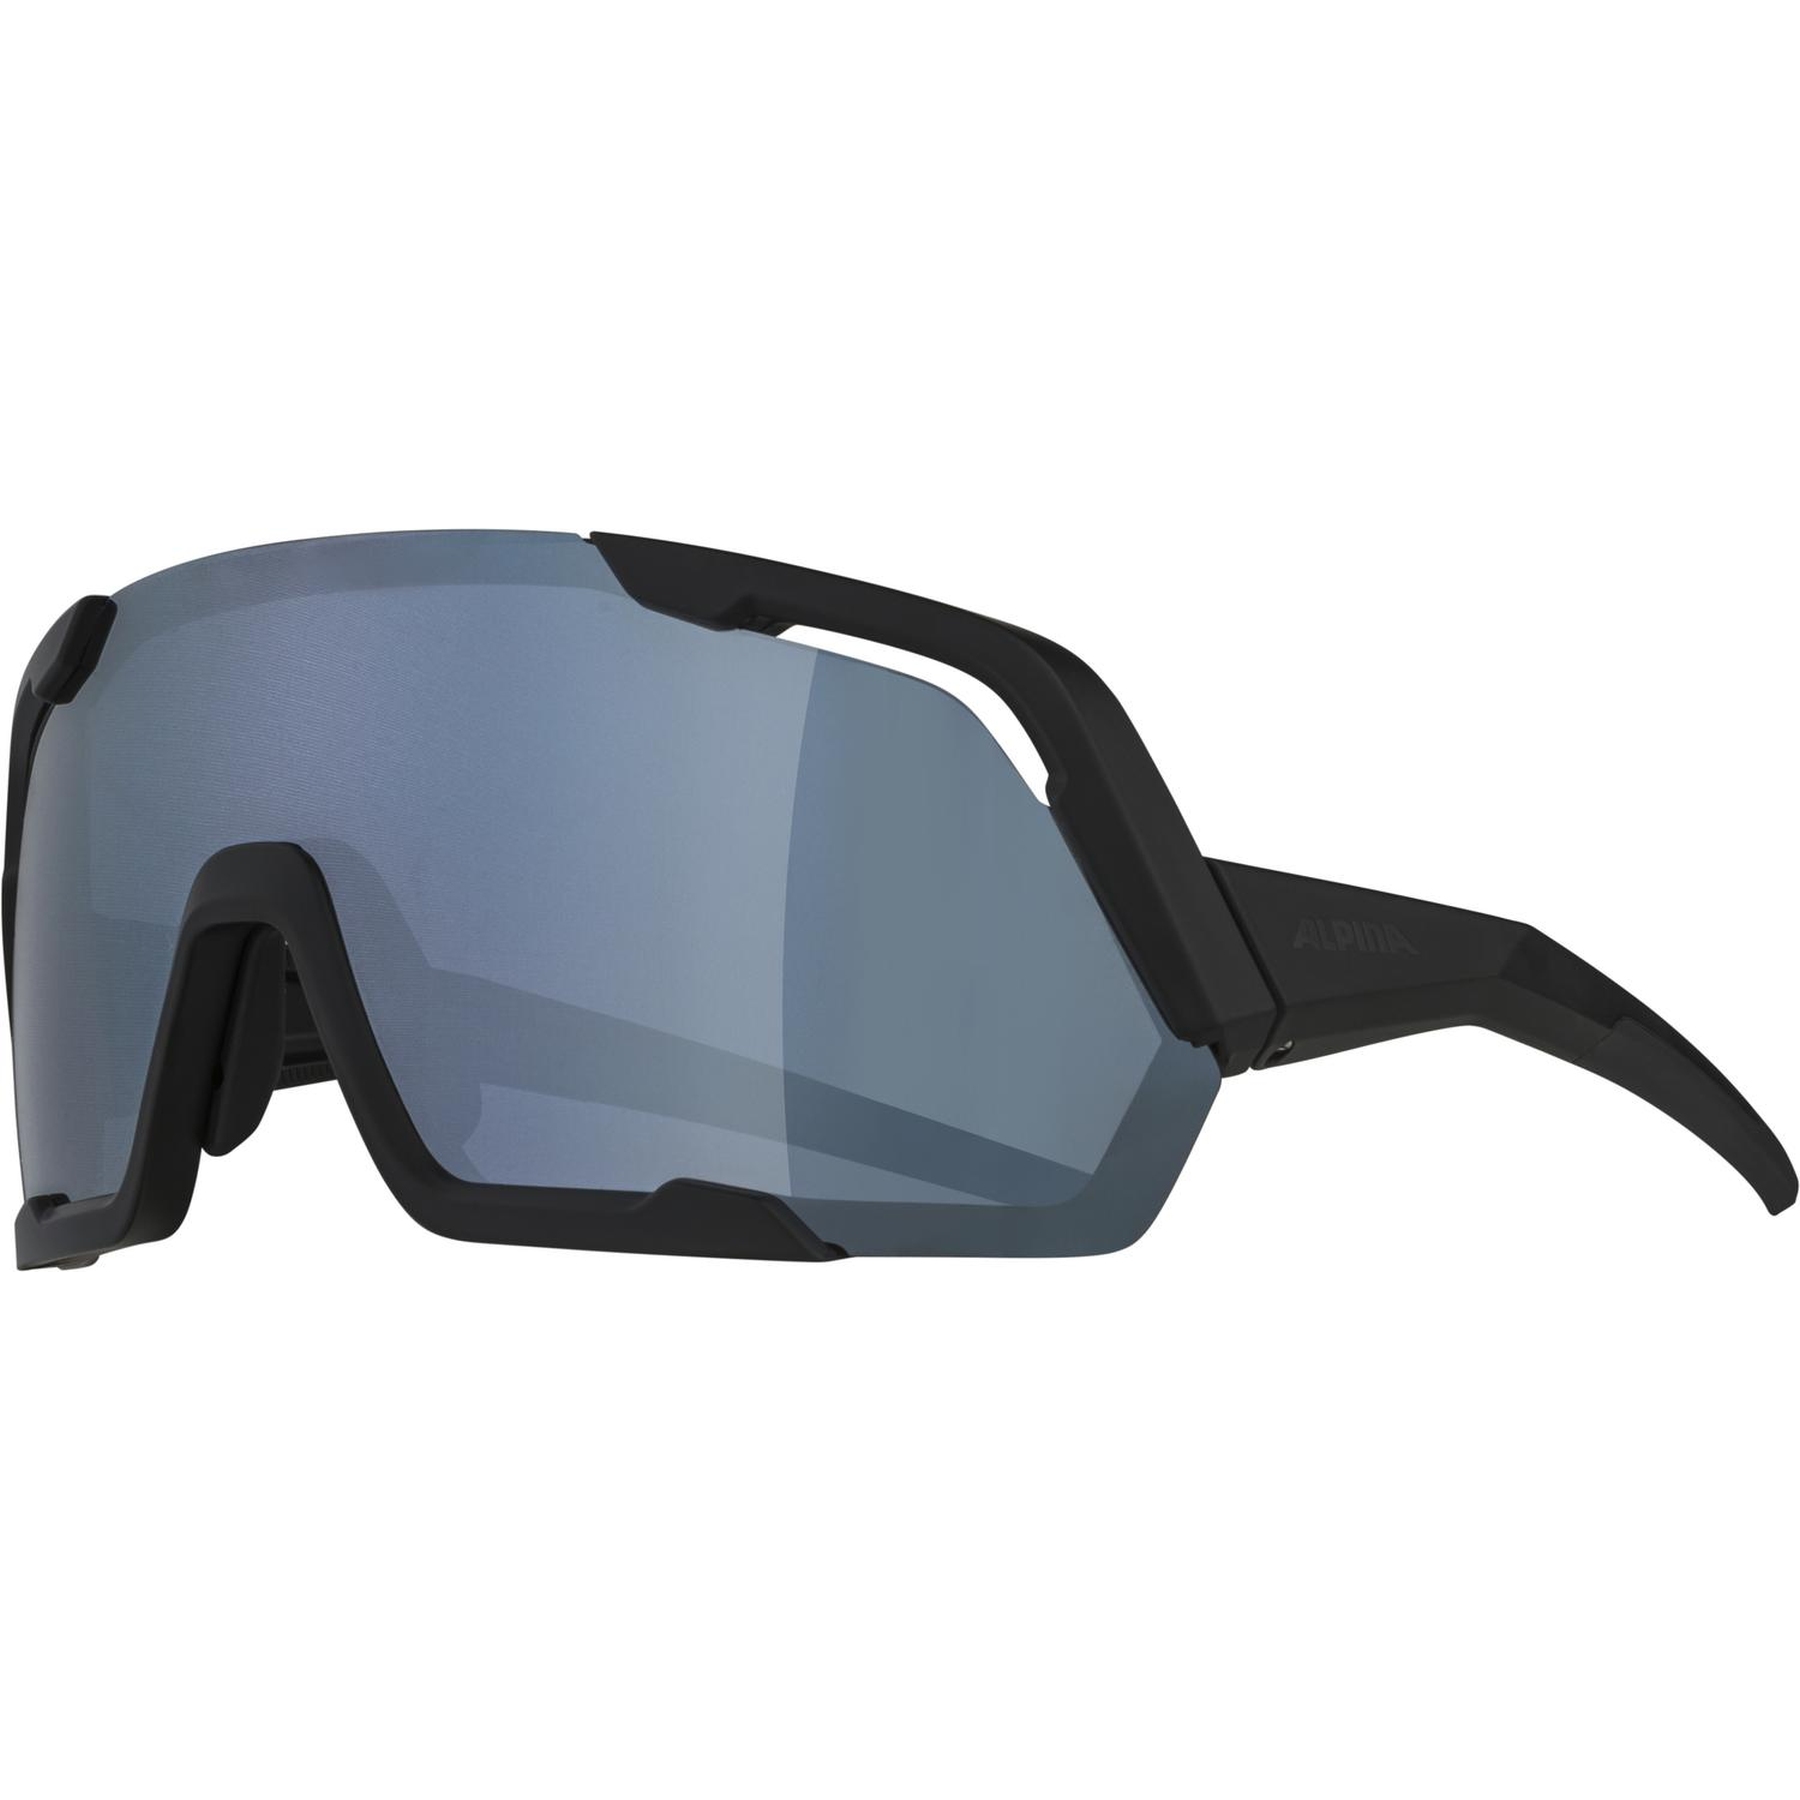 Produktbild von Alpina Rocket Brille - all black matt/Black